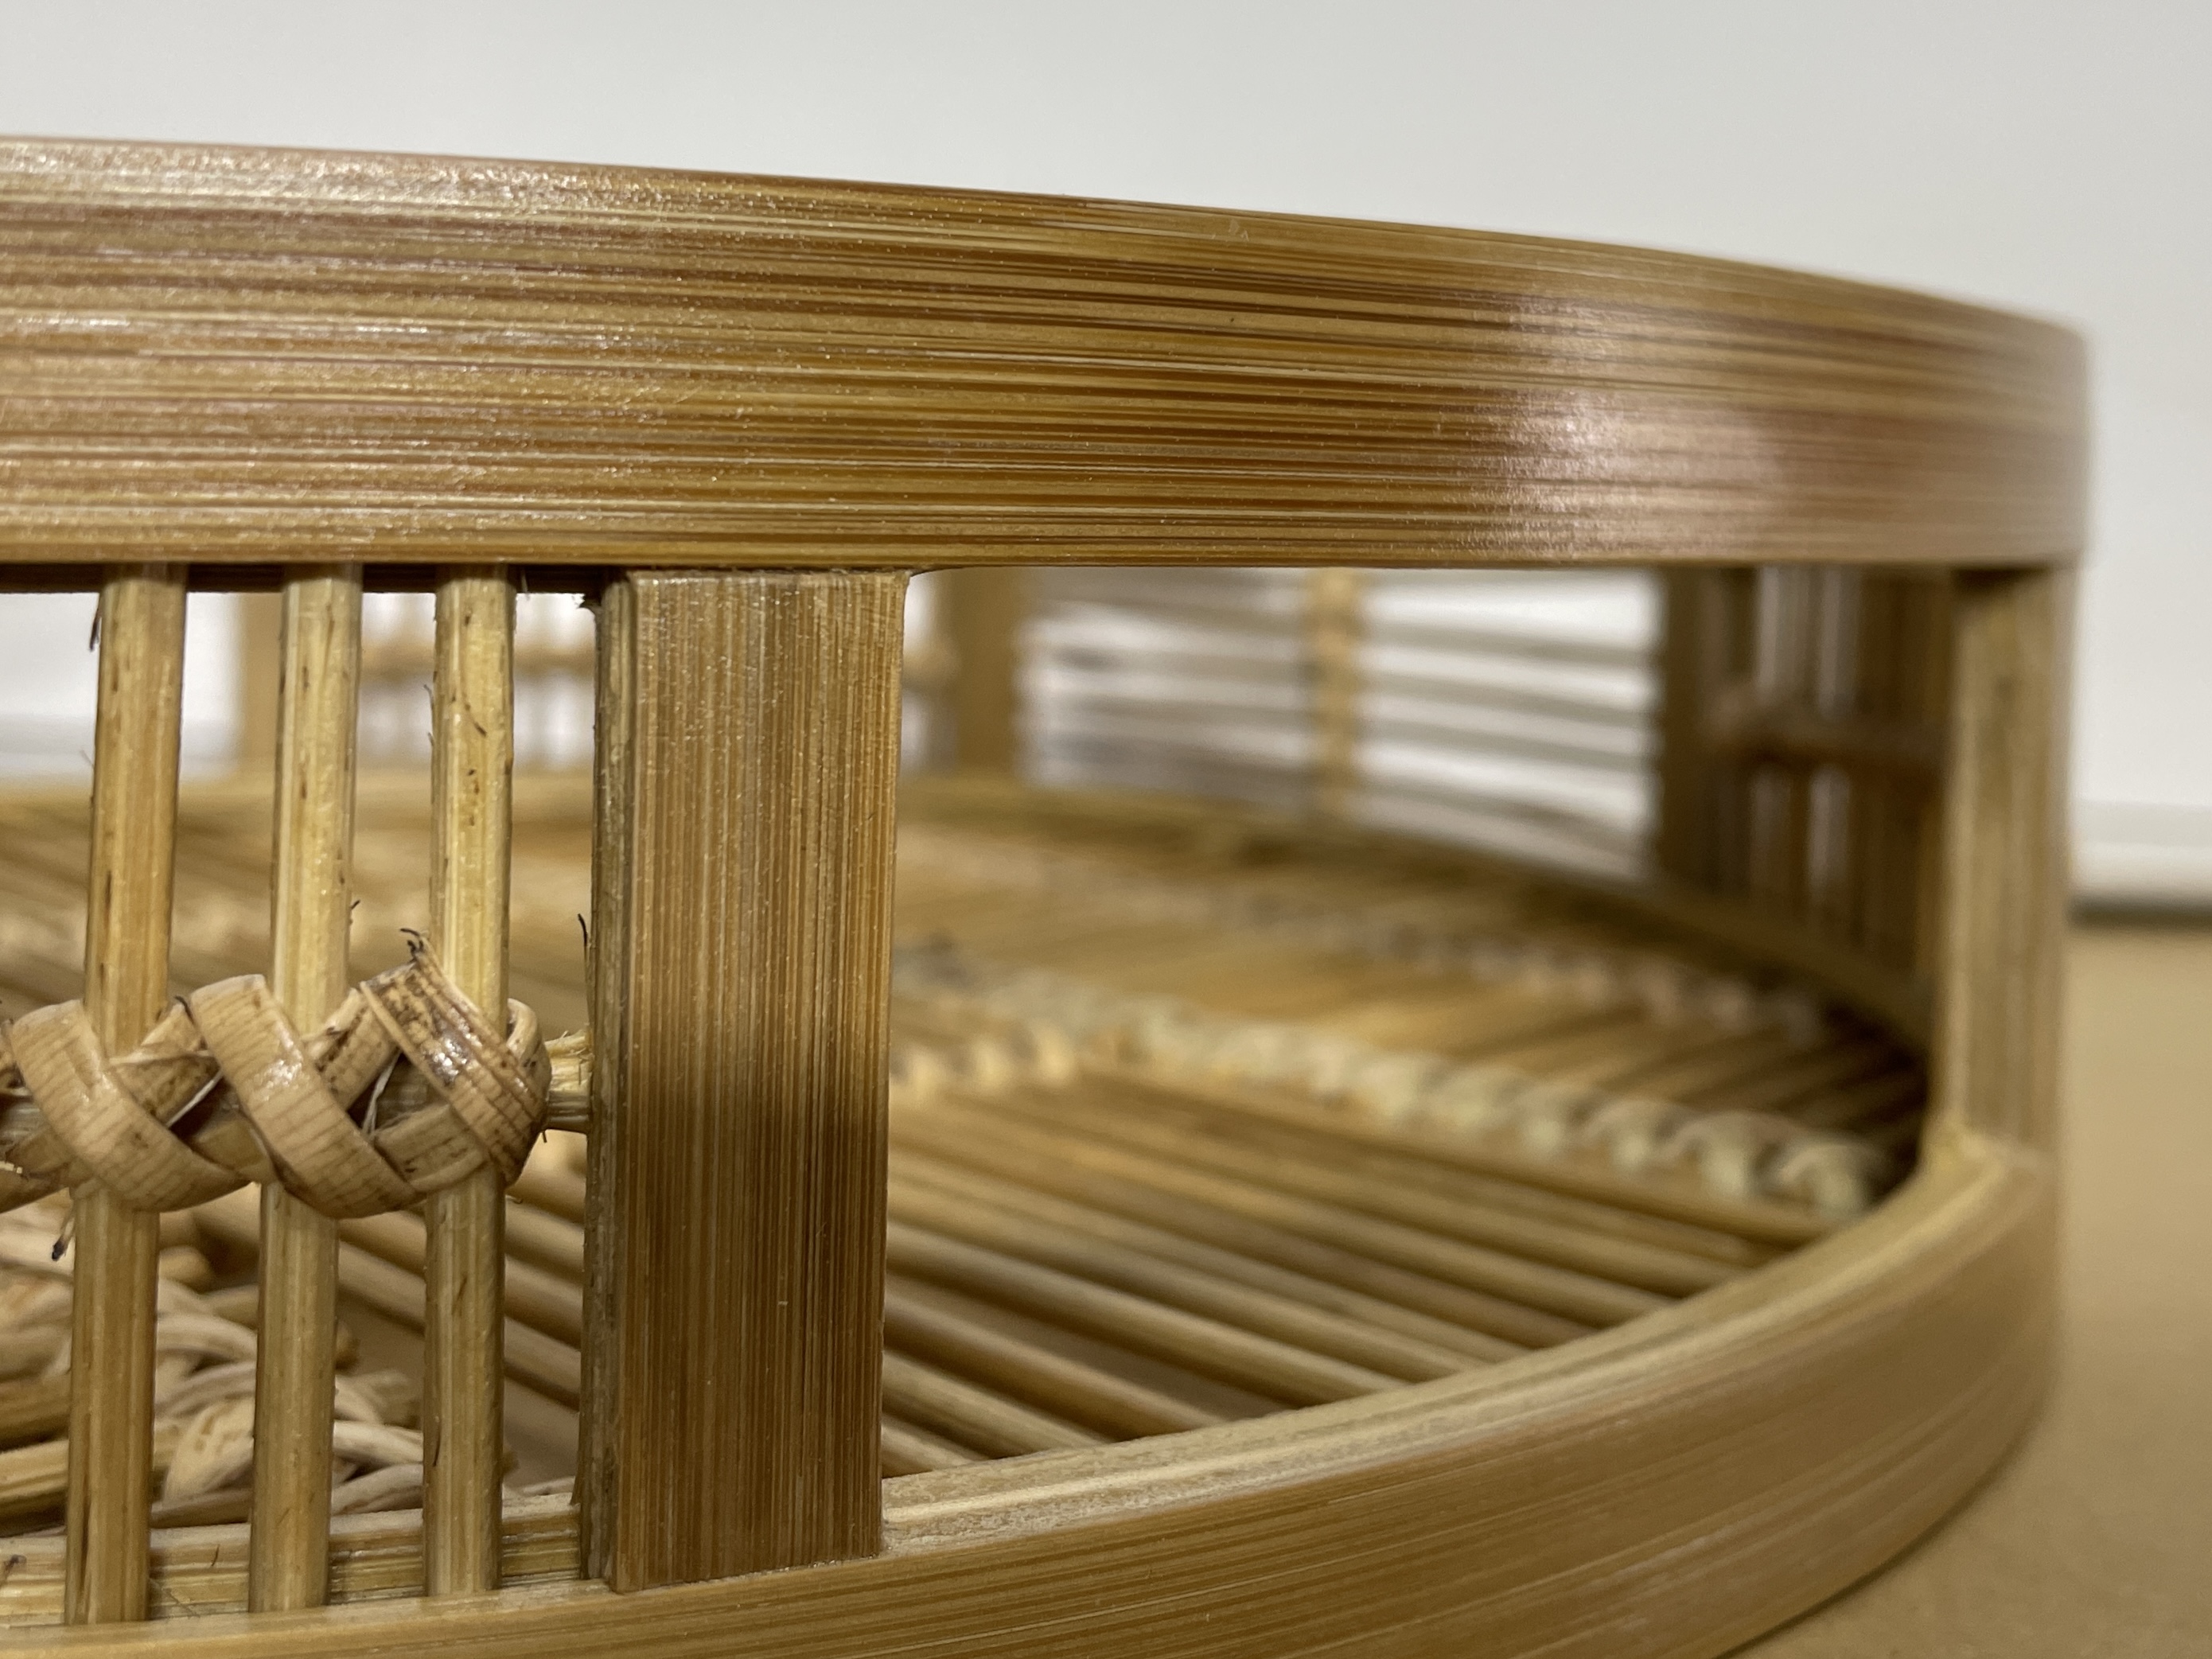 バンブートレイ 丸型トレイ 編み込み 手編み 竹製 竹細工 お盆 30cm